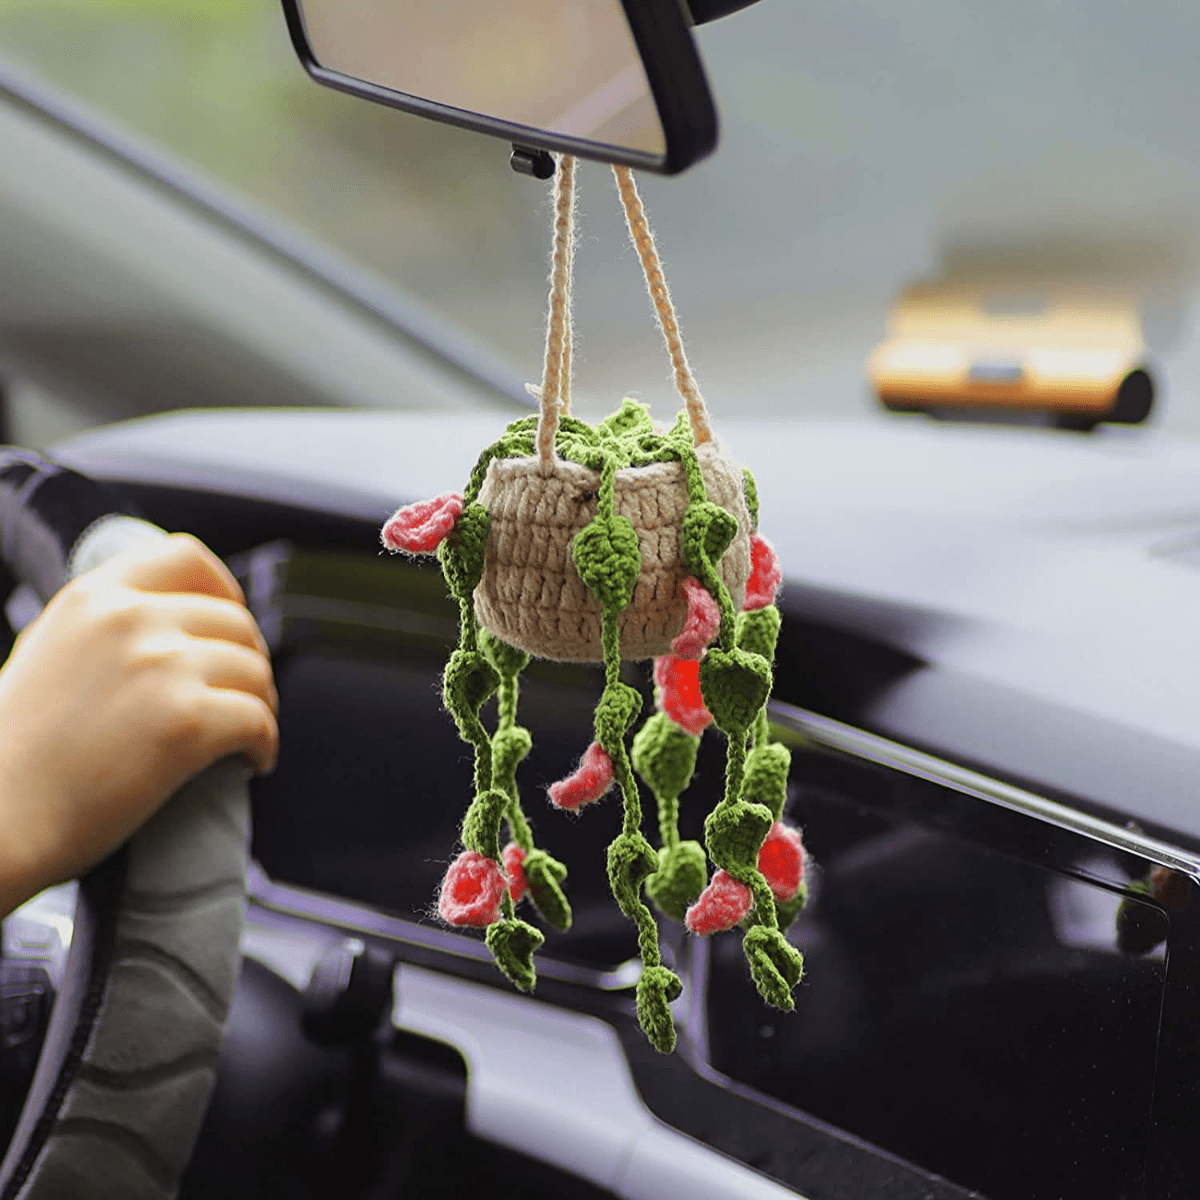 Auto-Spiegel-Häkelpflanze, kompakte Topfpflanzen-Anhänger für Autospiegel